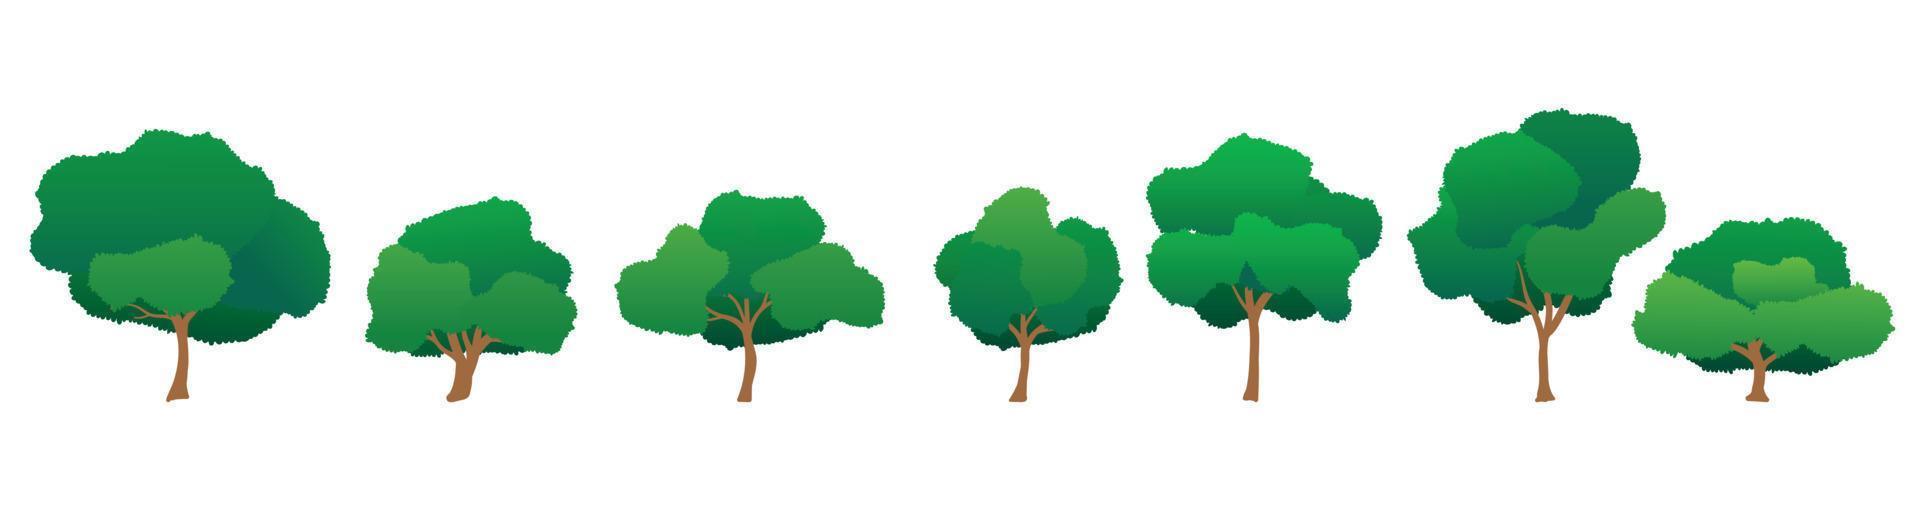 colección de ilustraciones de árboles de dibujos animados. se puede utilizar para ilustrar cualquier tema de naturaleza o estilo de vida saludable o ecología. vector